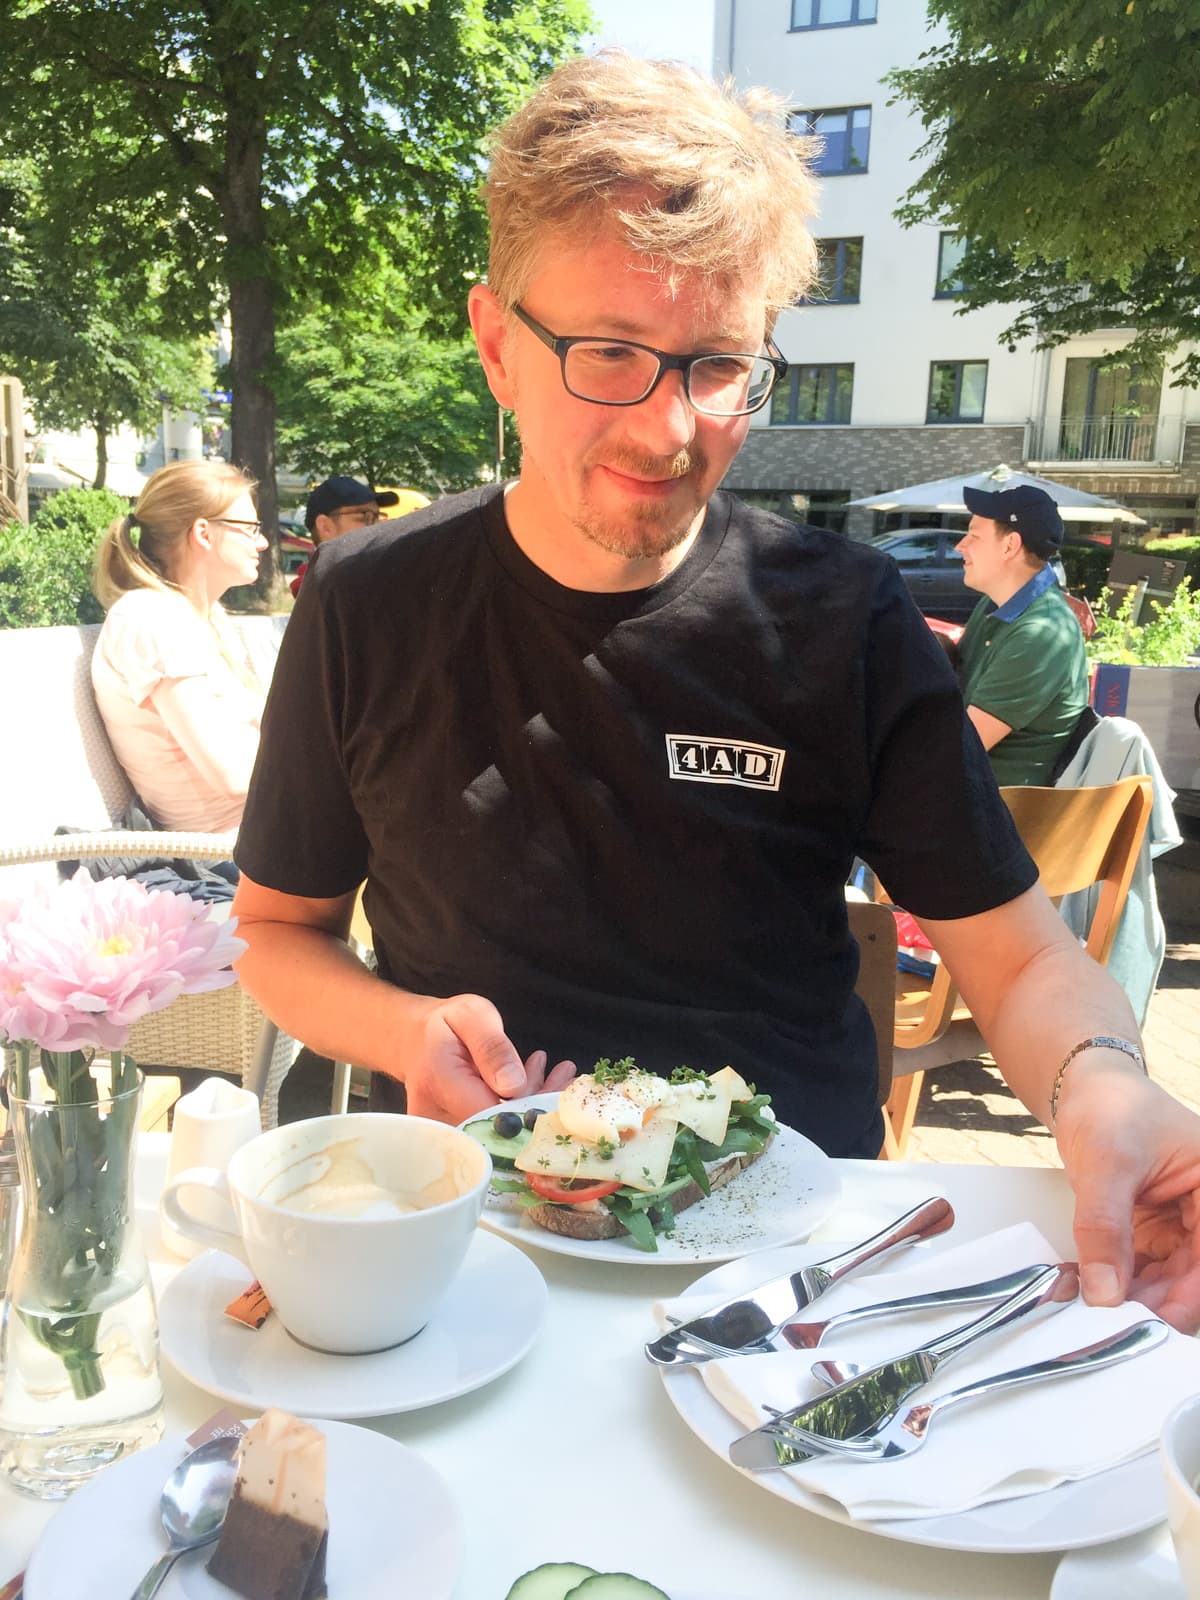 Aaron eating brunch in Hamburg